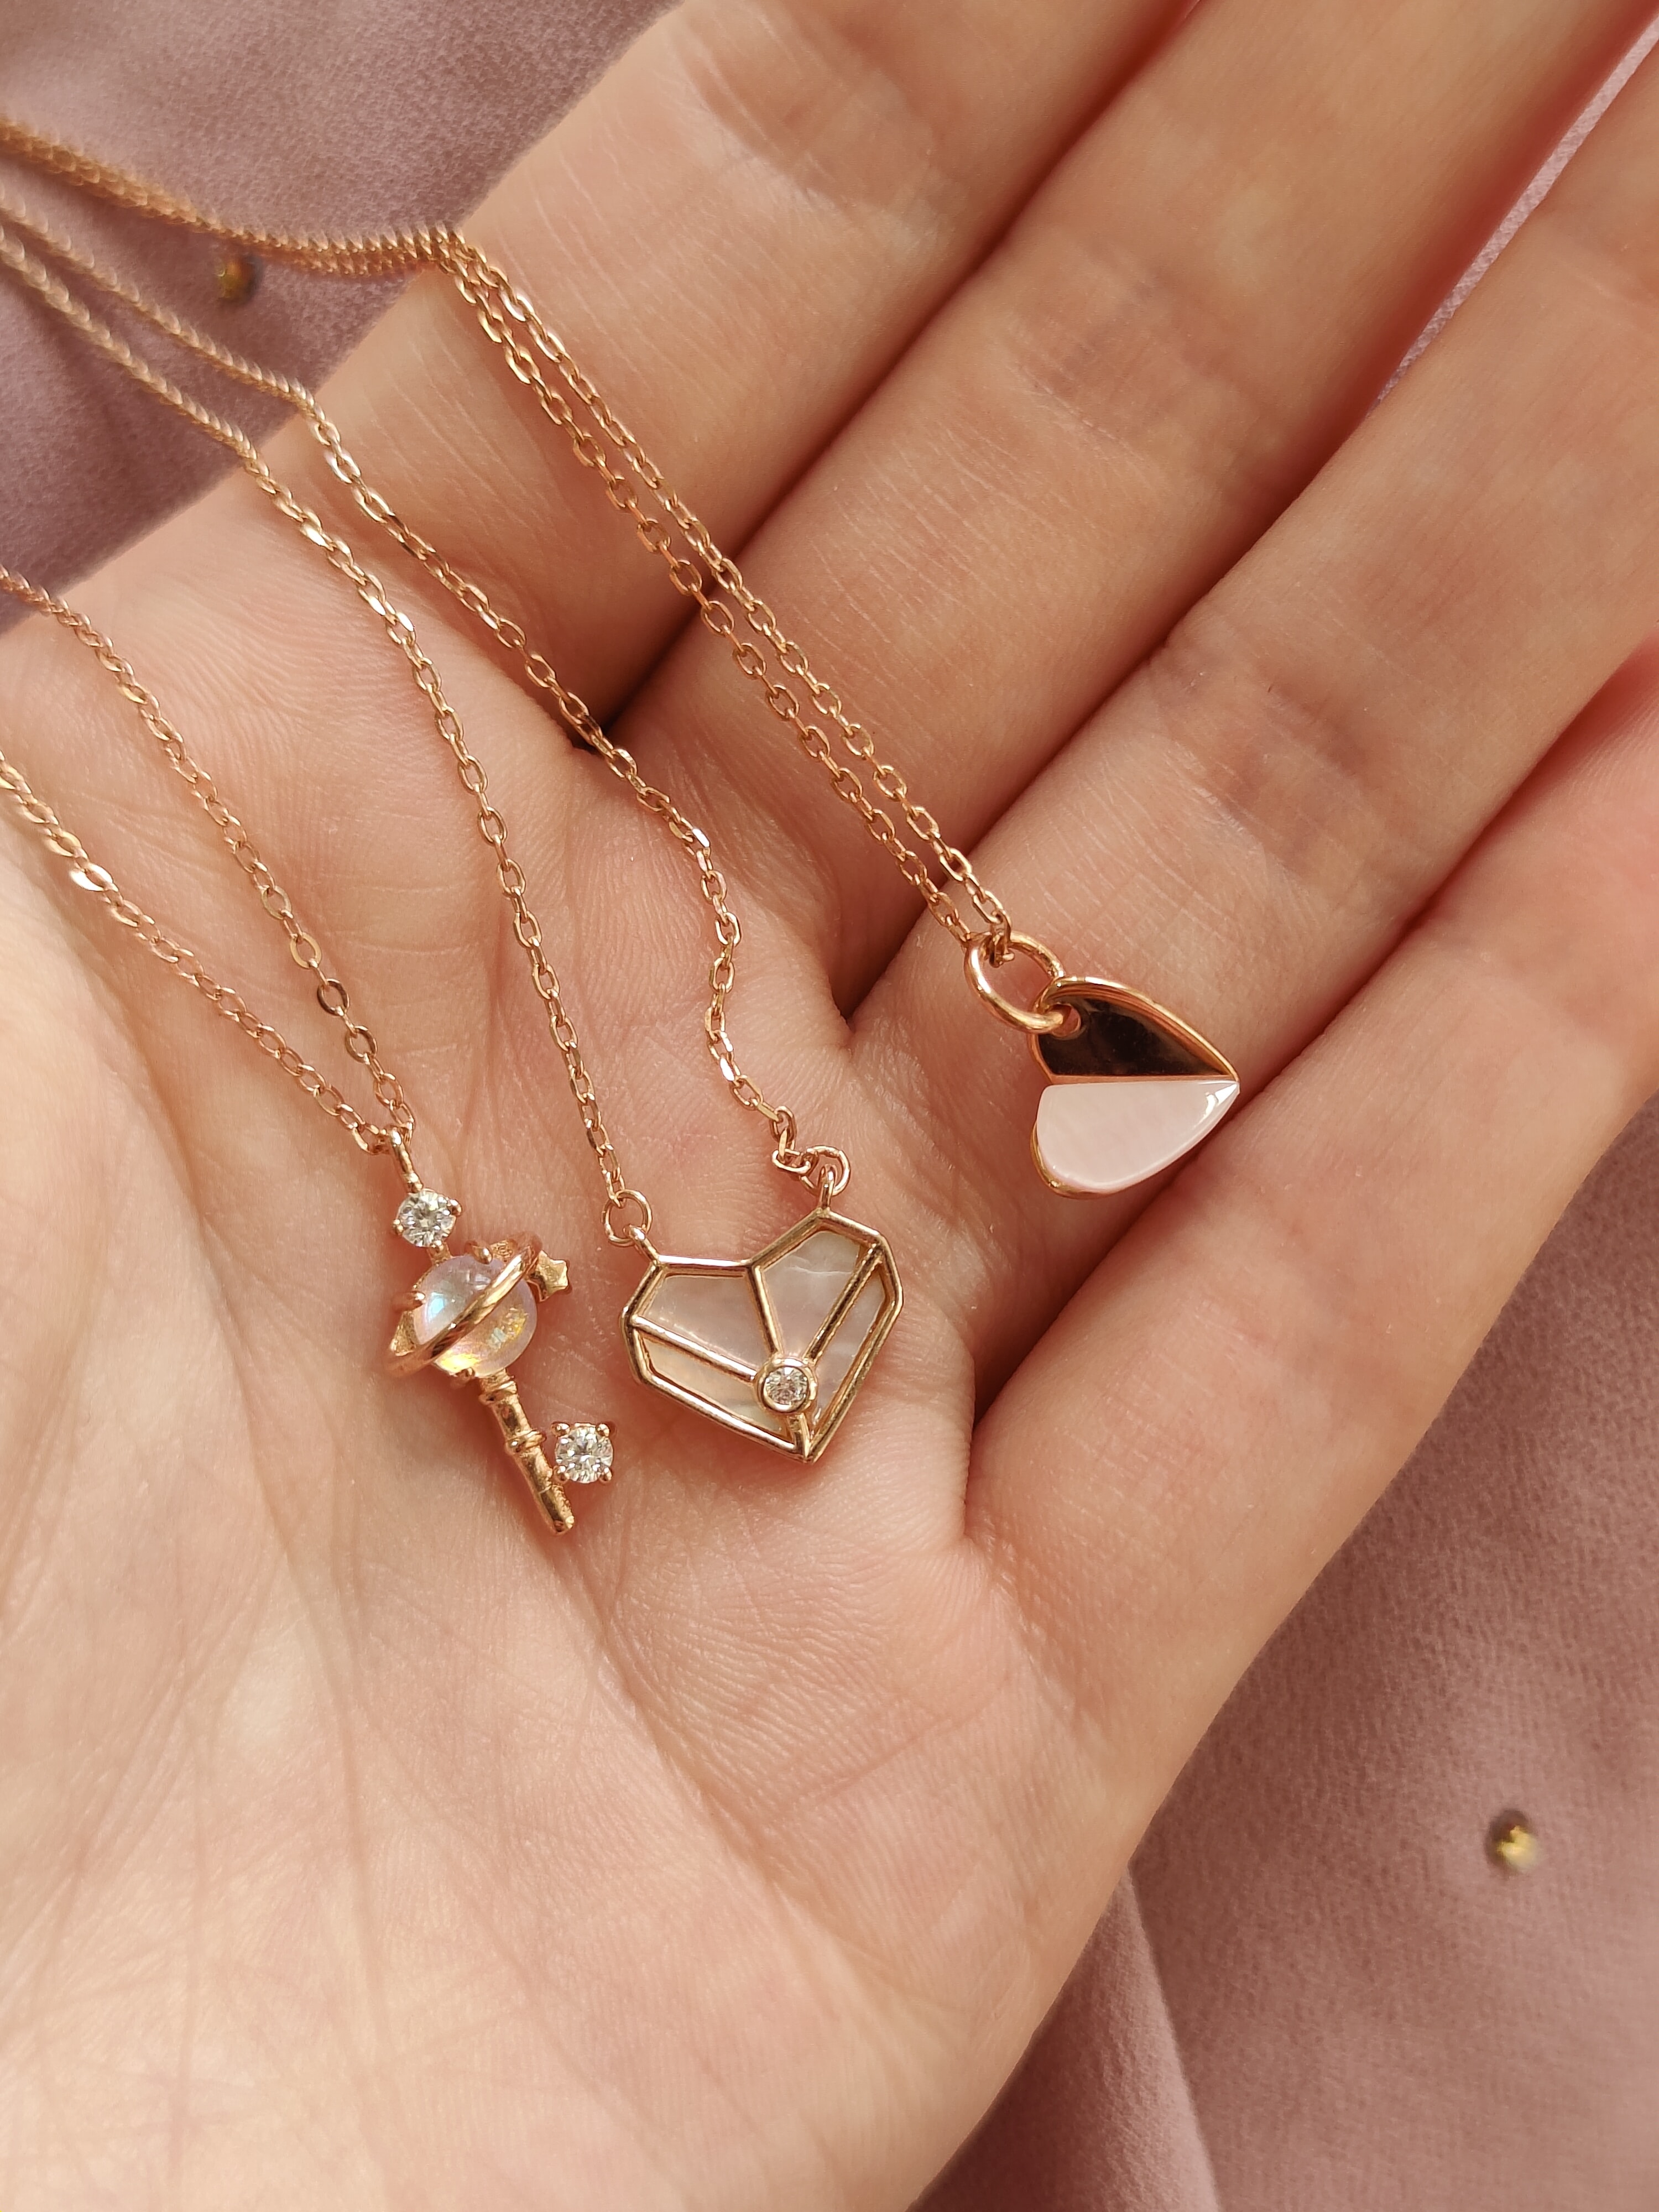 Tres collares dorados sobre una mano, los cuales tienen forma de corazon y paleta con diamantitos incrustados 